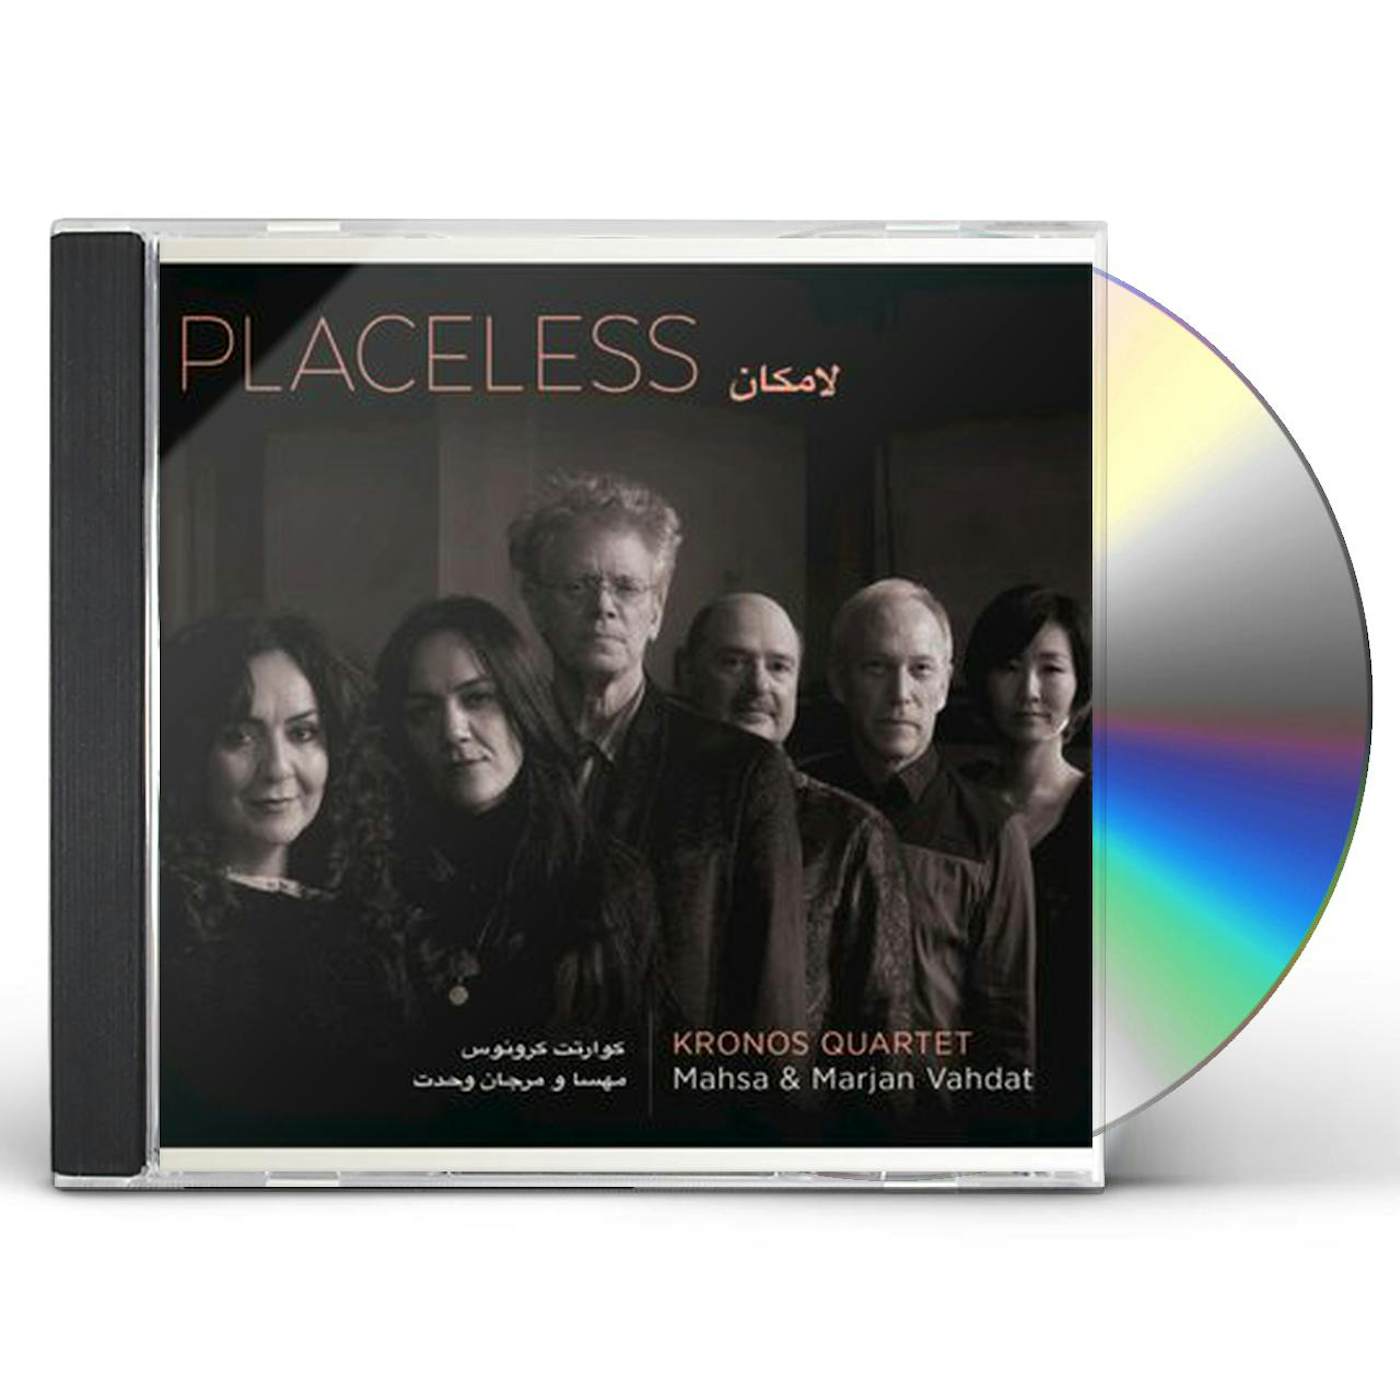 Kronos Quartet PLACELESS CD